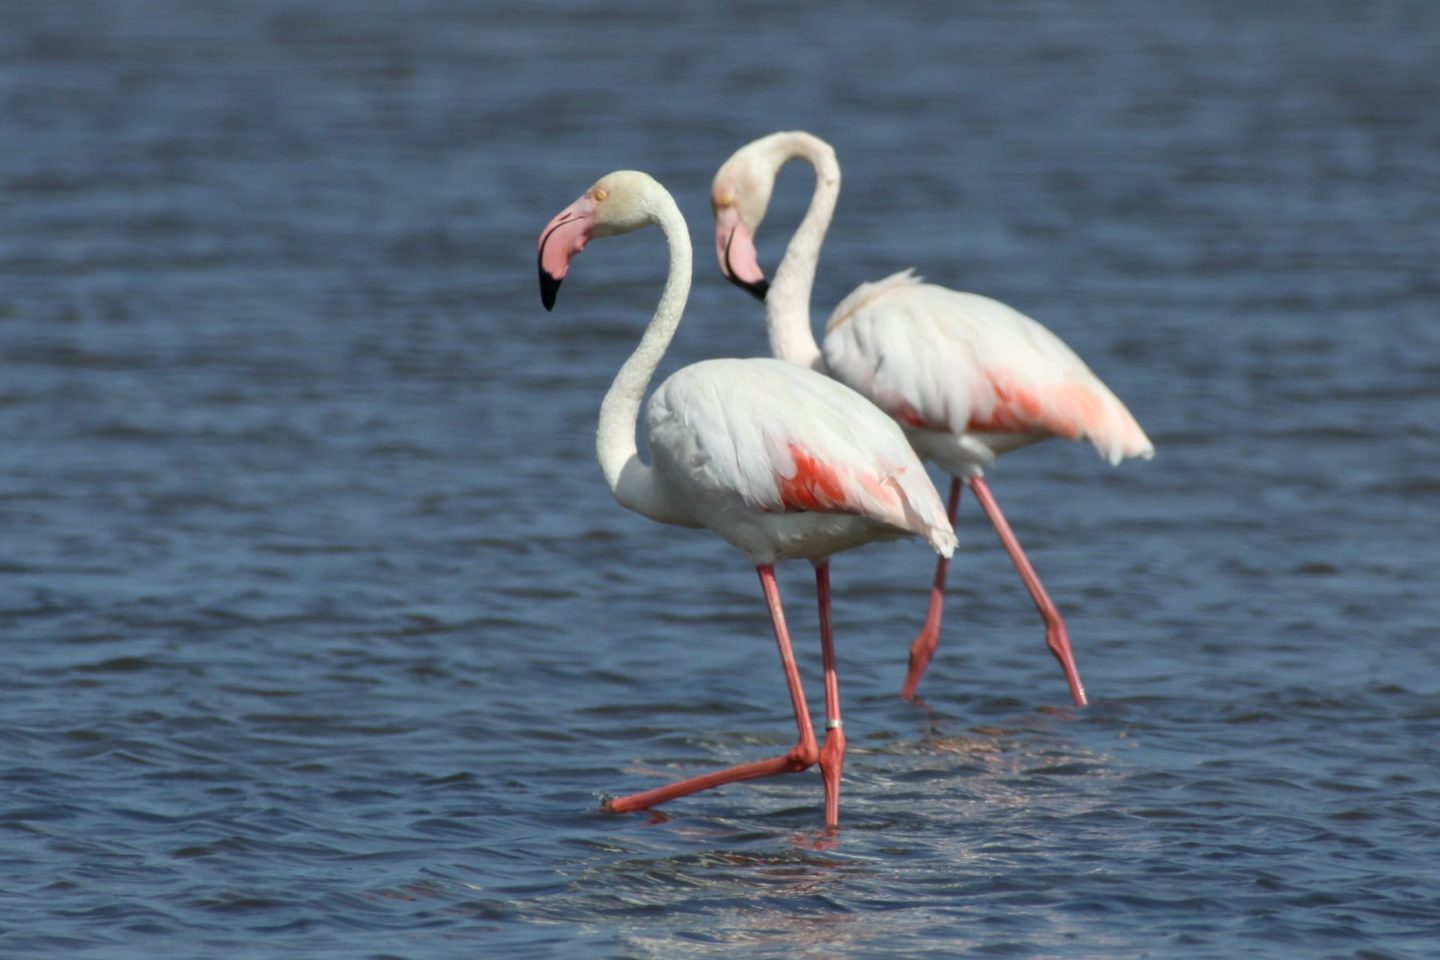 Flamingo Tour na Ria Formosa a partir de Cabanas de Tavira